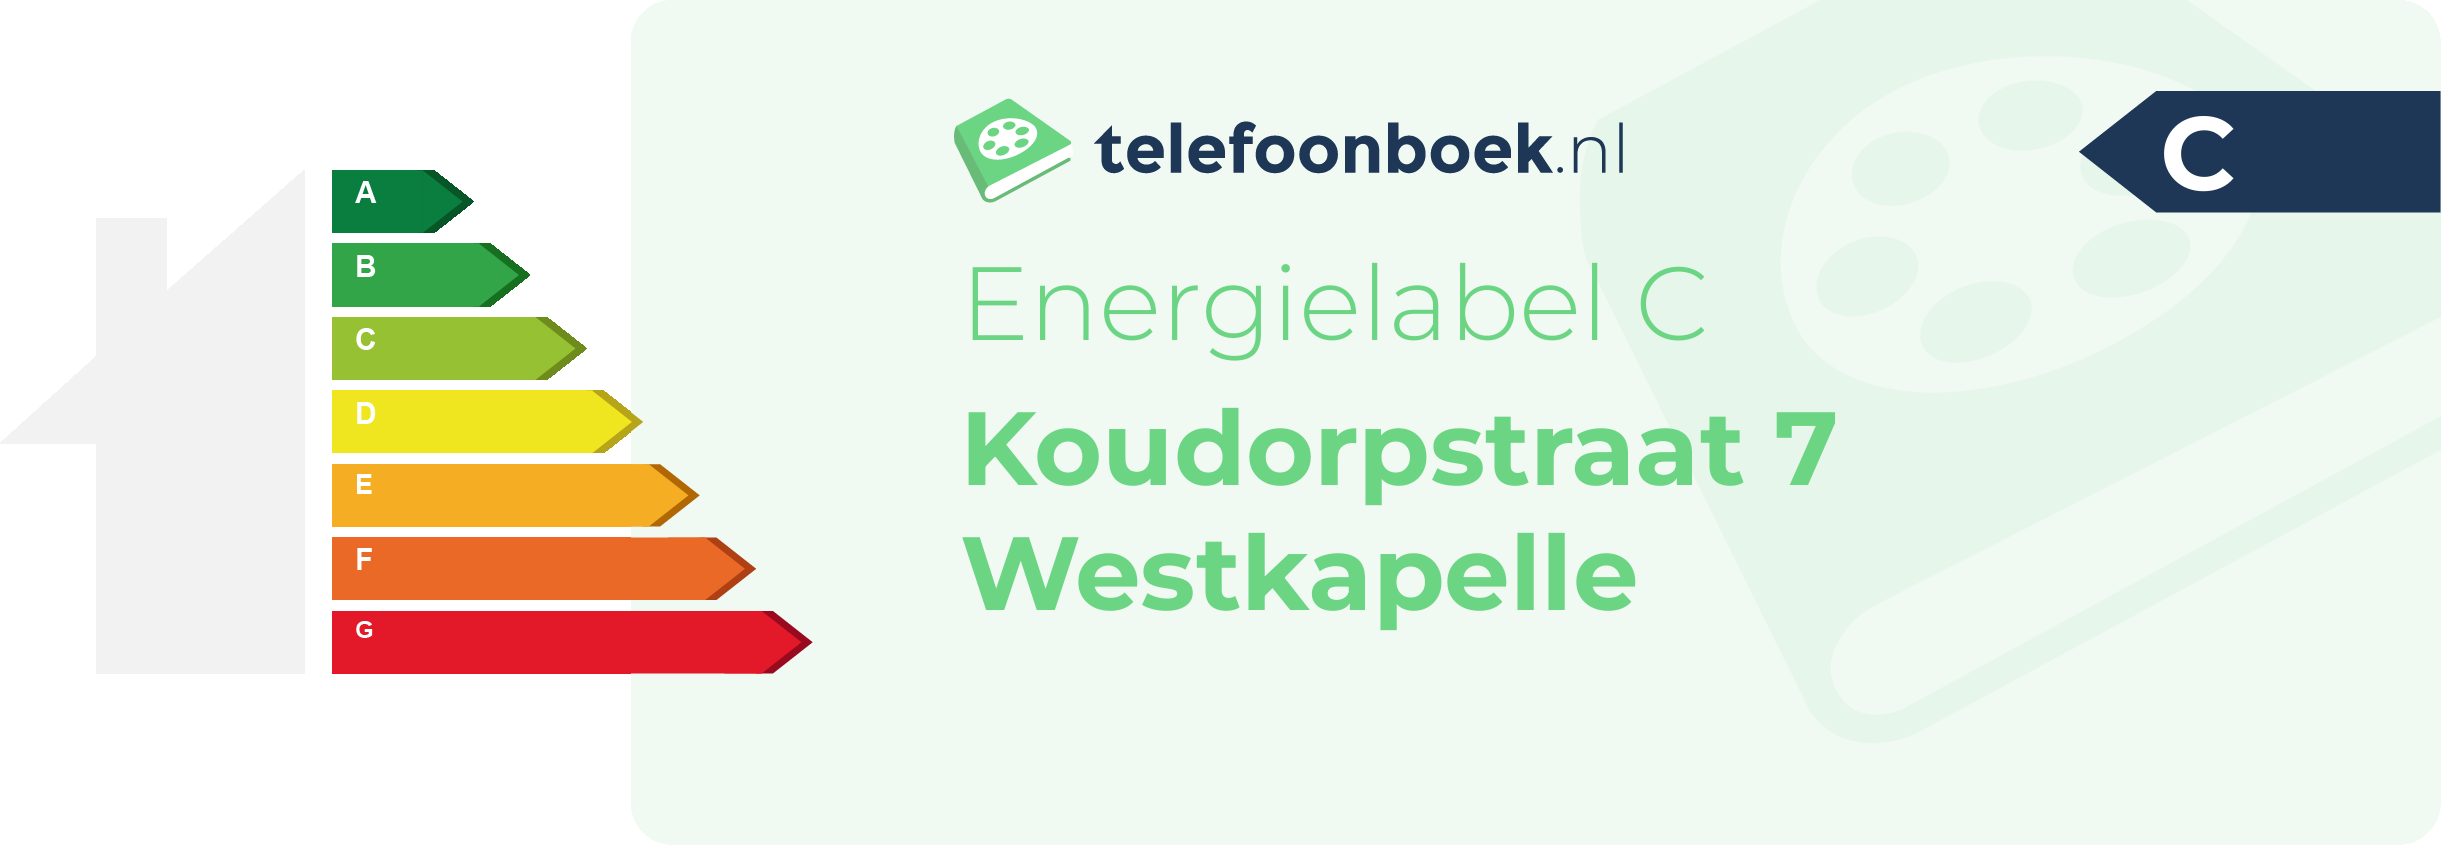 Energielabel Koudorpstraat 7 Westkapelle